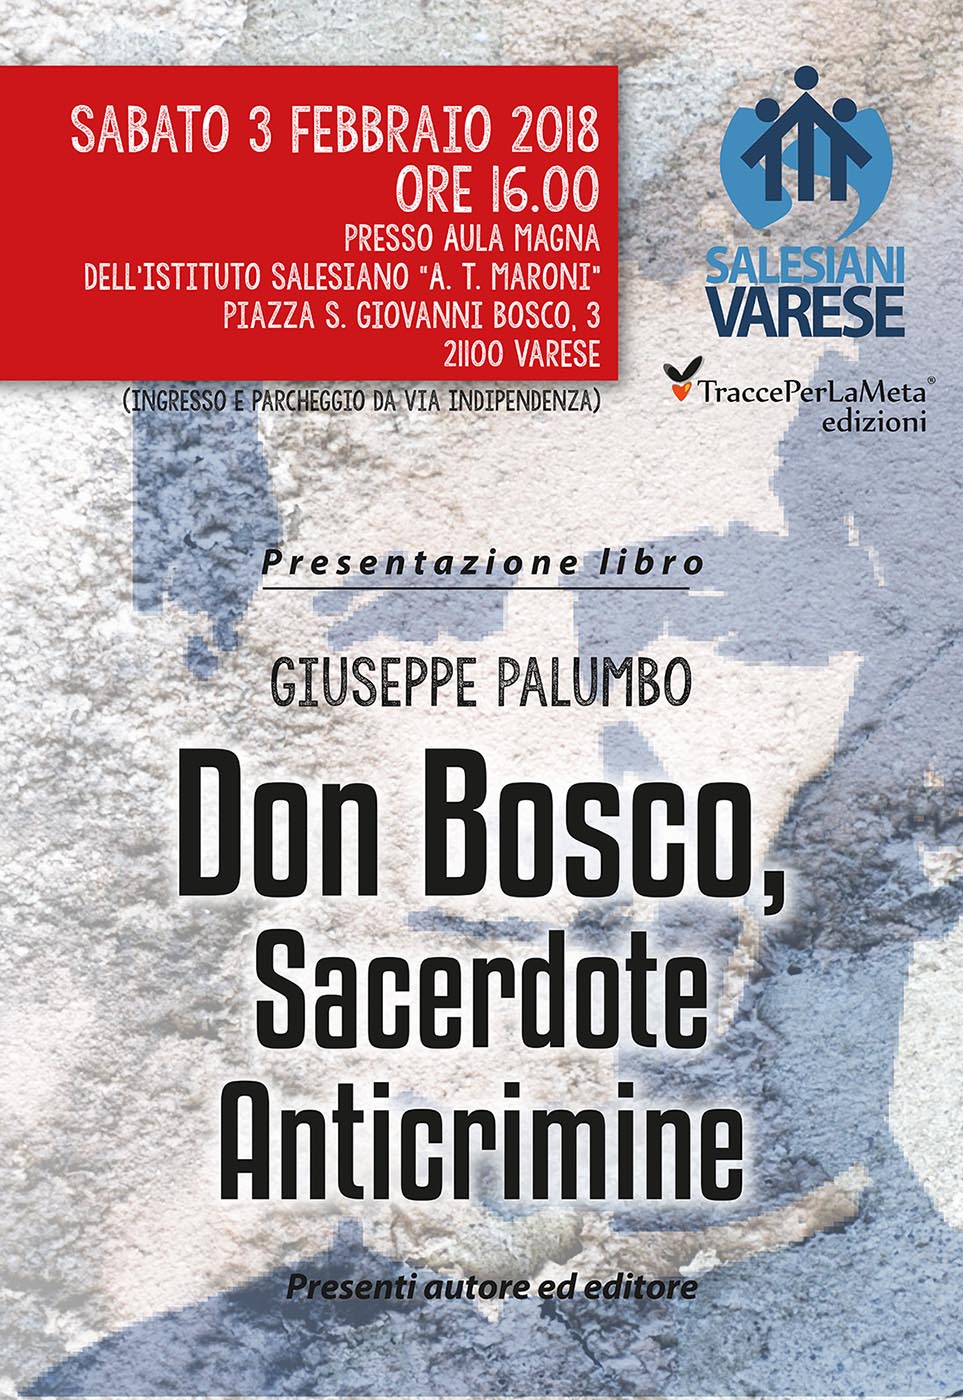 3.2.2018 – Presentazione Libro “Don Bosco, Sacerdote Anticrimine” di Giuseppe Palumbo